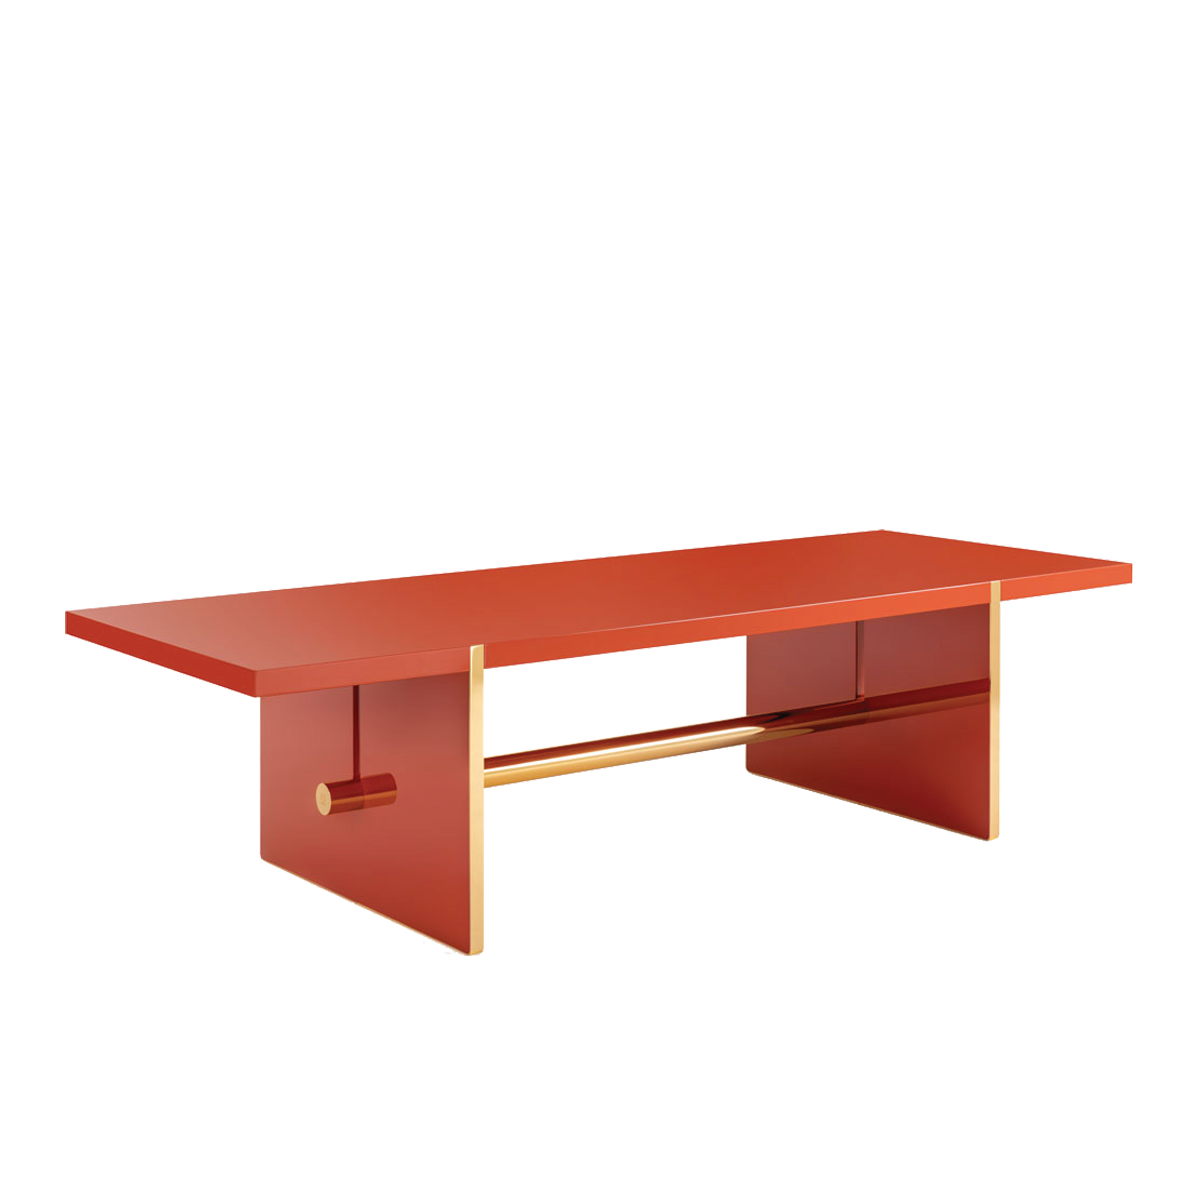 Icaro Table